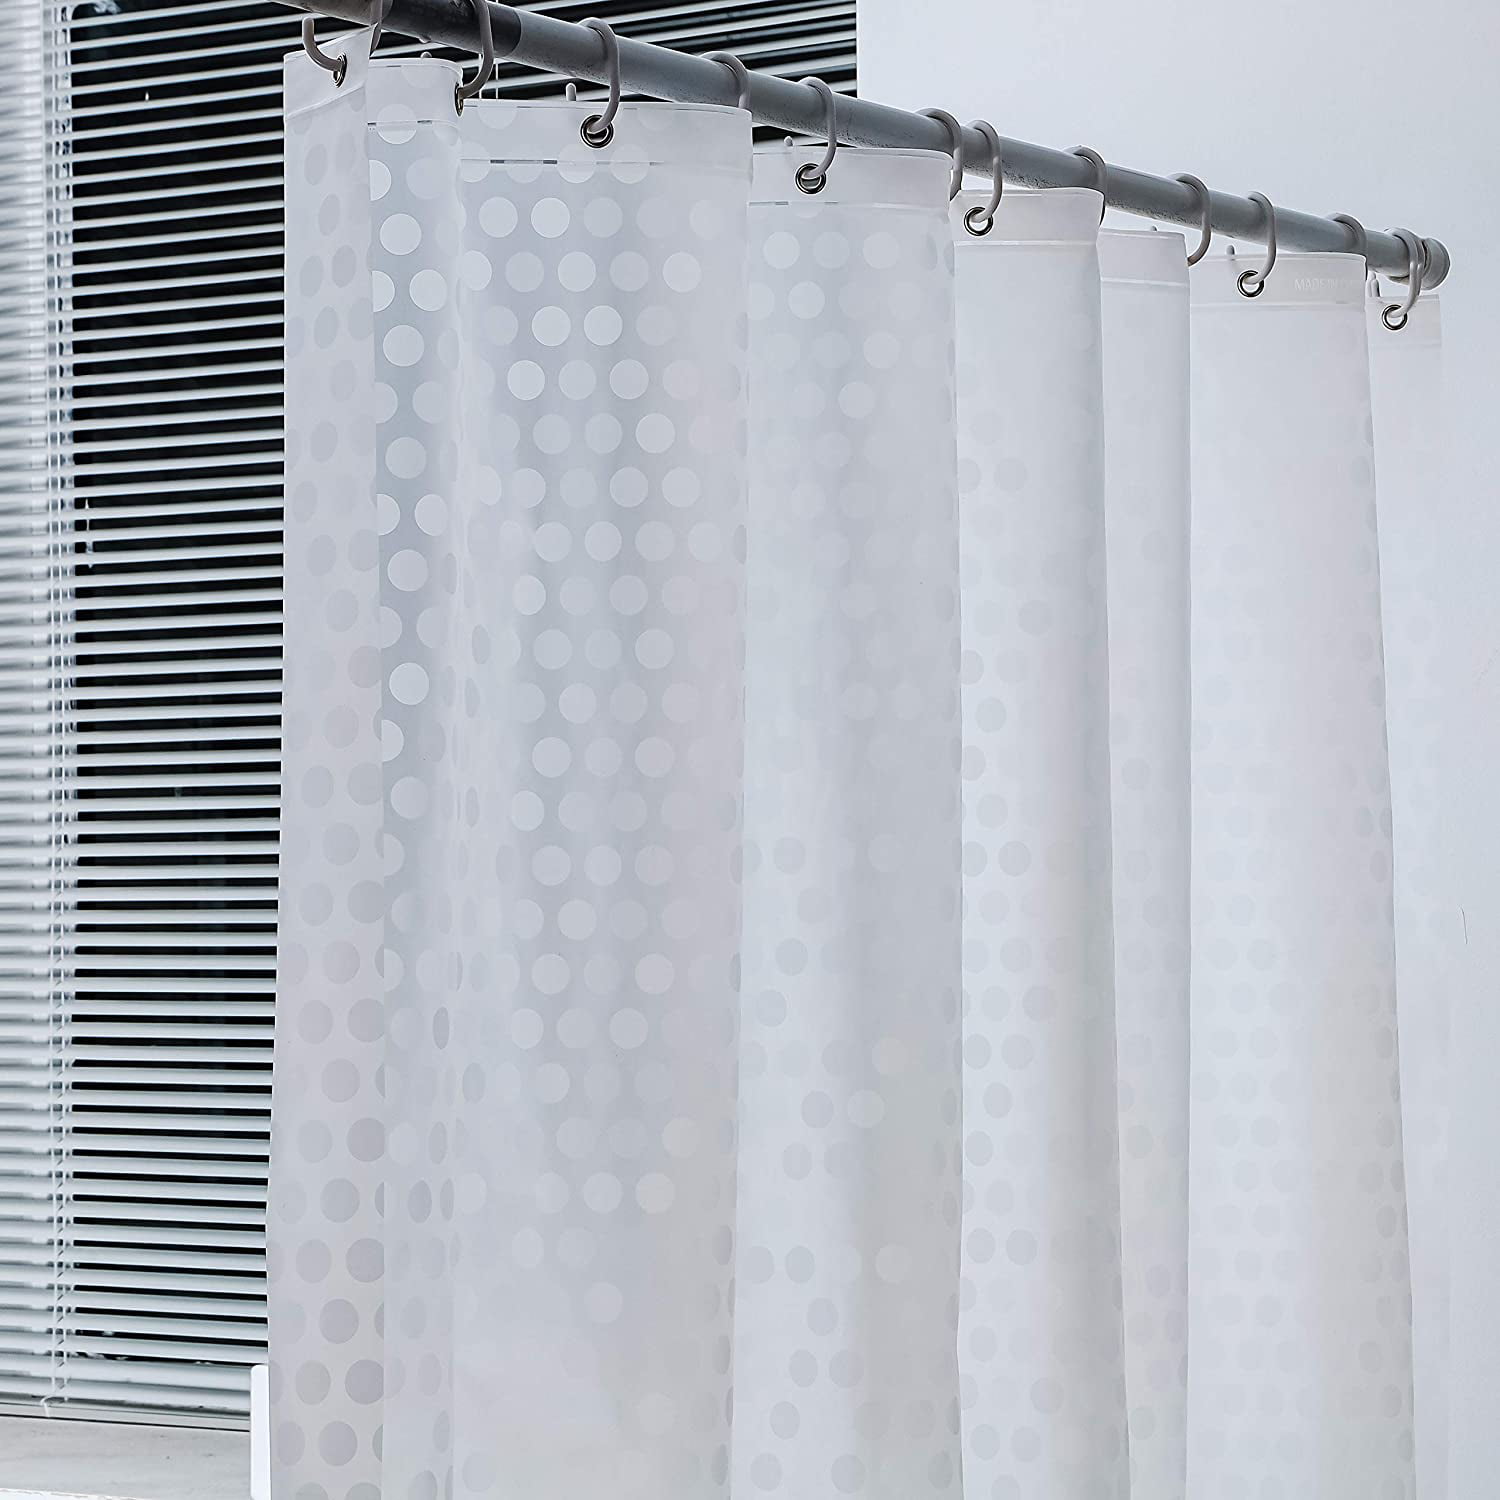 Waterproof Paris Print Shower Curtain Sheer Panel BATH+12pcs Hook Extra Long 